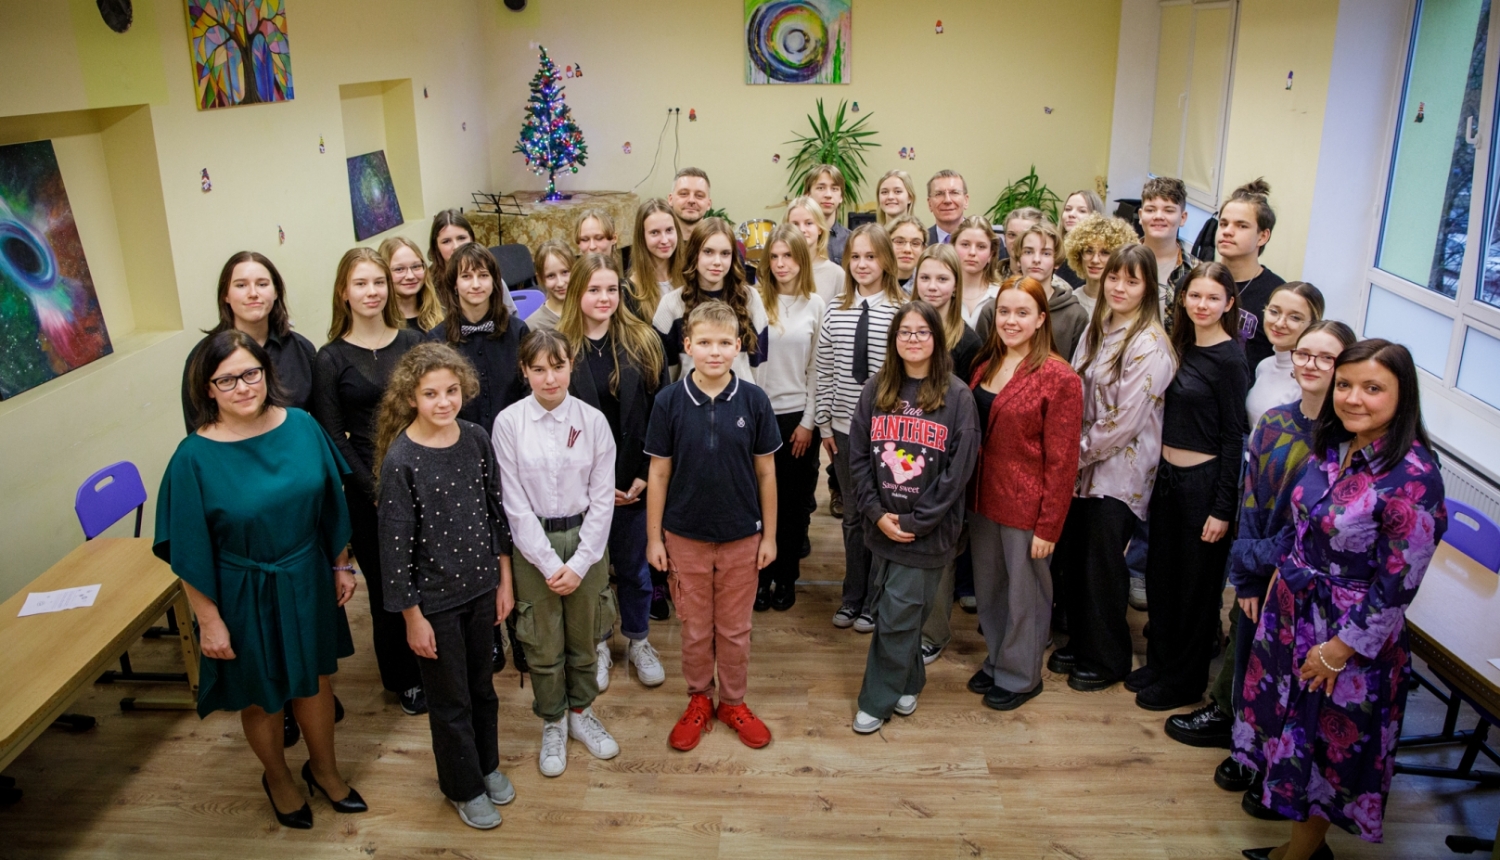 Valsts prezidenta Edgara Rinkēviča dalība Rīgas 45. vidusskolas skolēnu pašpārvaldes raidierakstā "Sarunas bēniņos" un tikšanās ar skolēnu pašpārvaldes skolēniem